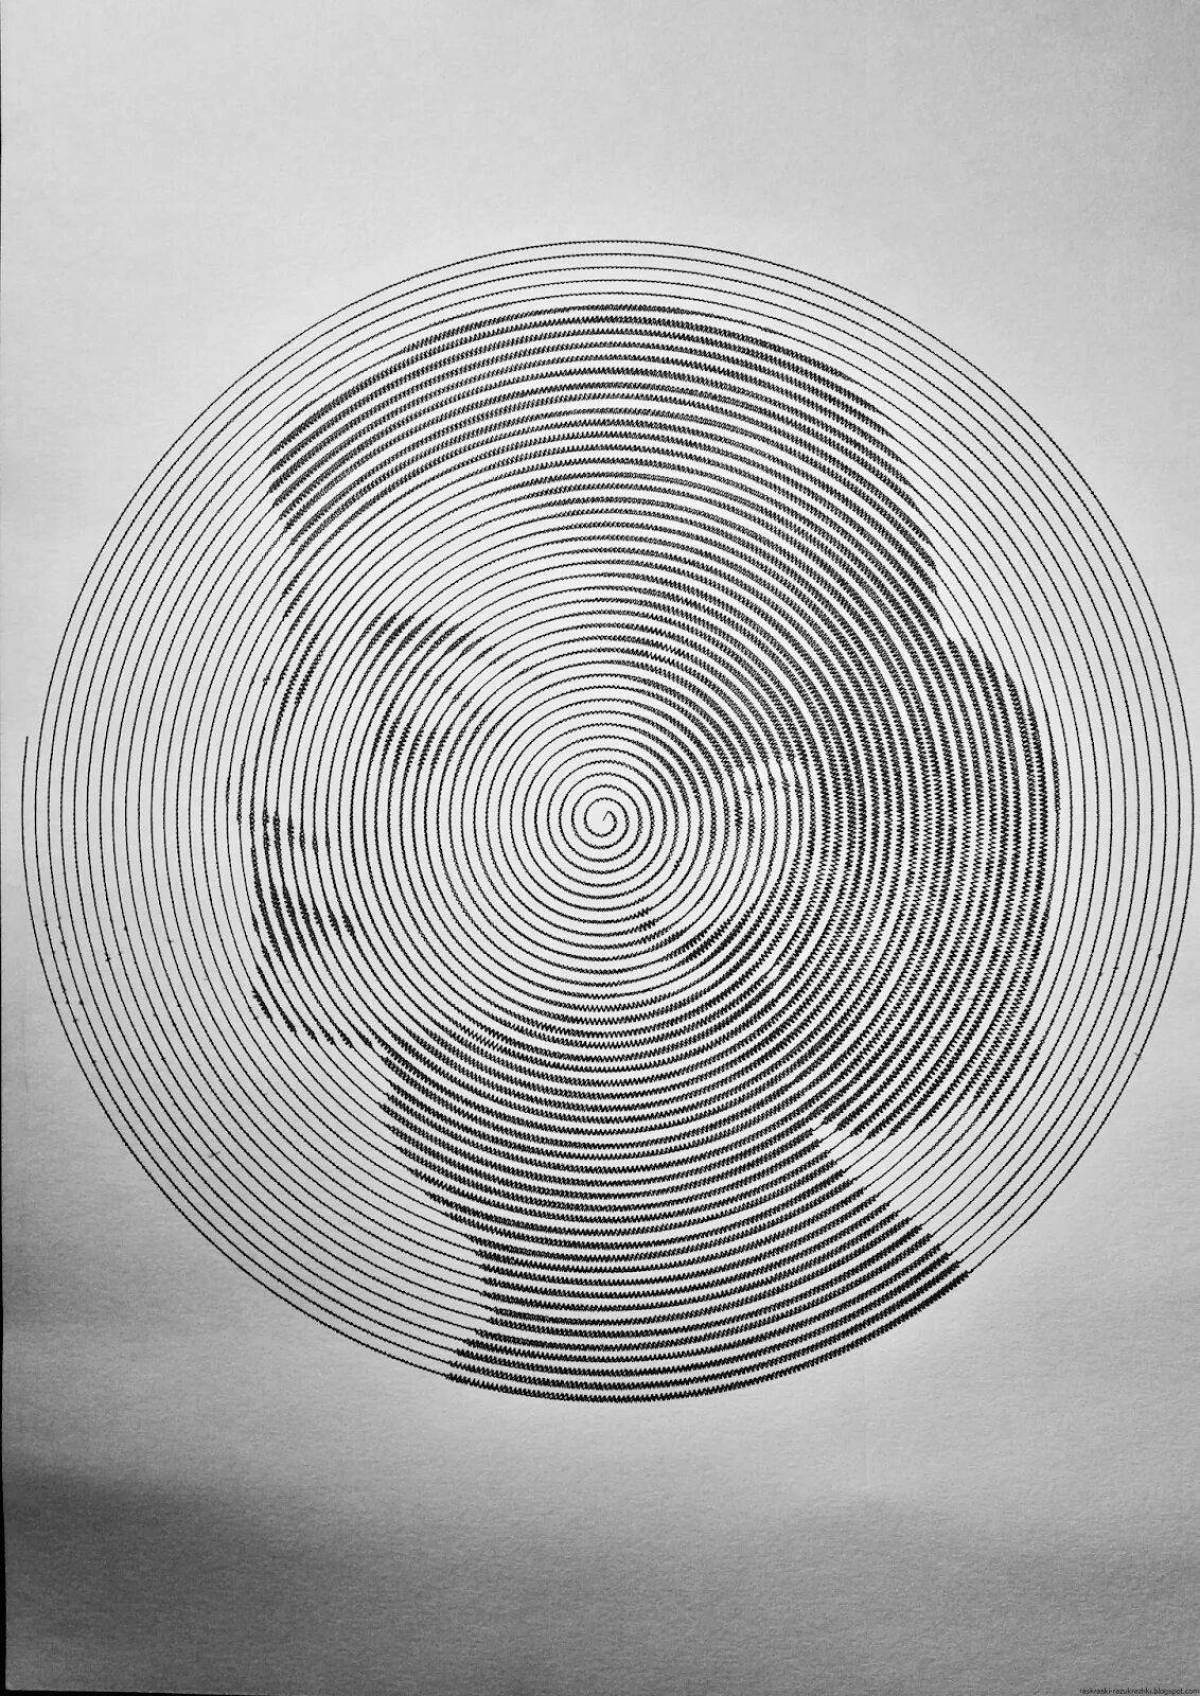 Elegant circular portrait